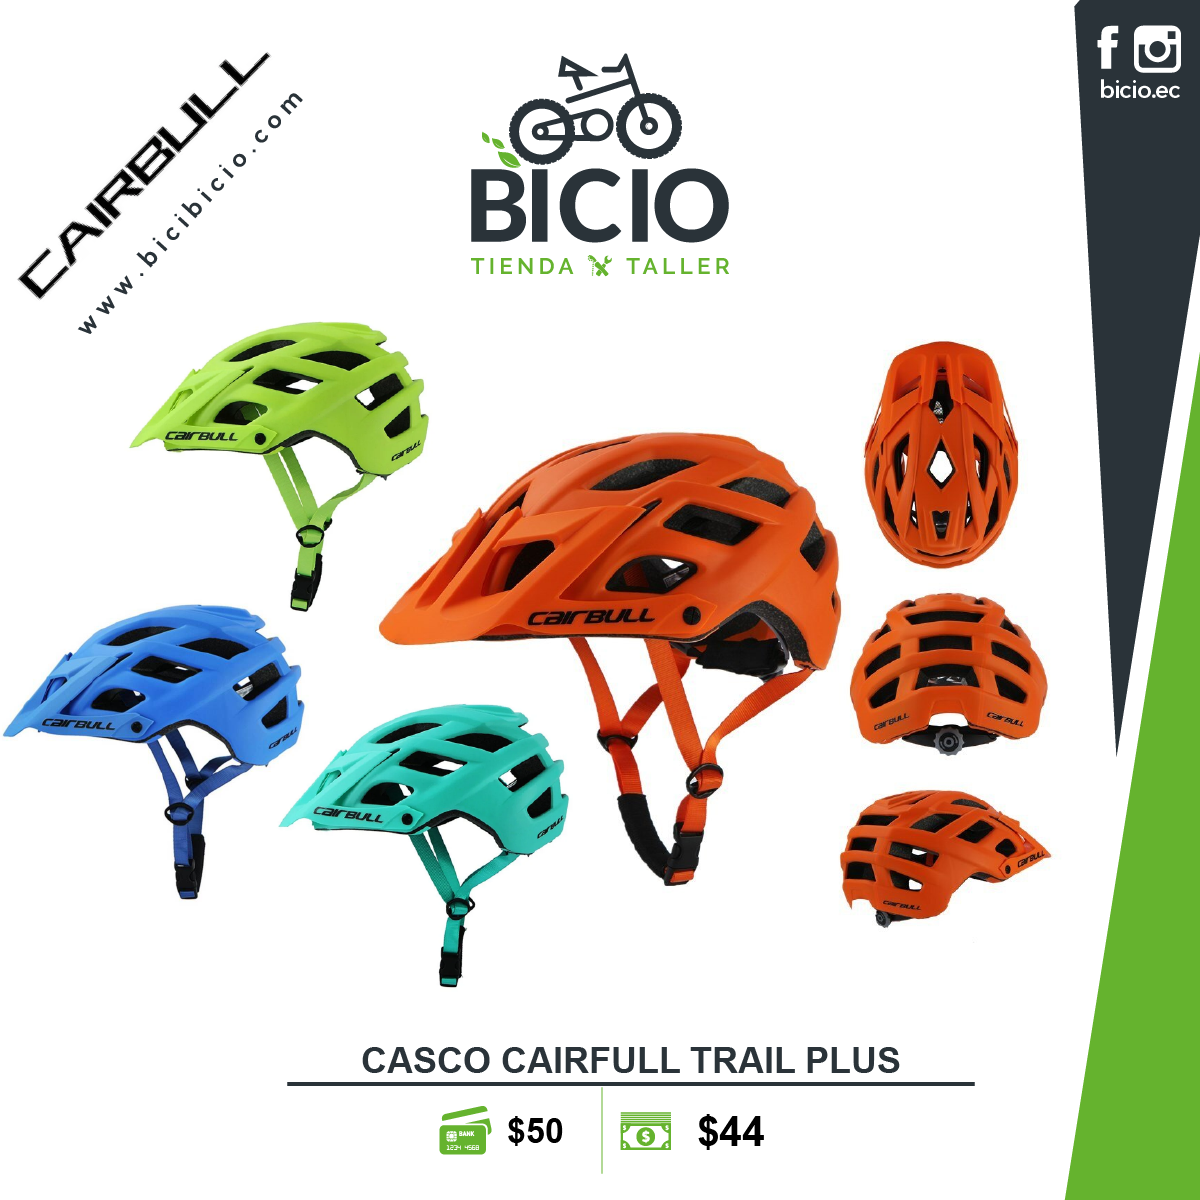 Casco Cairbull MTB Bicio taller de bicicletas